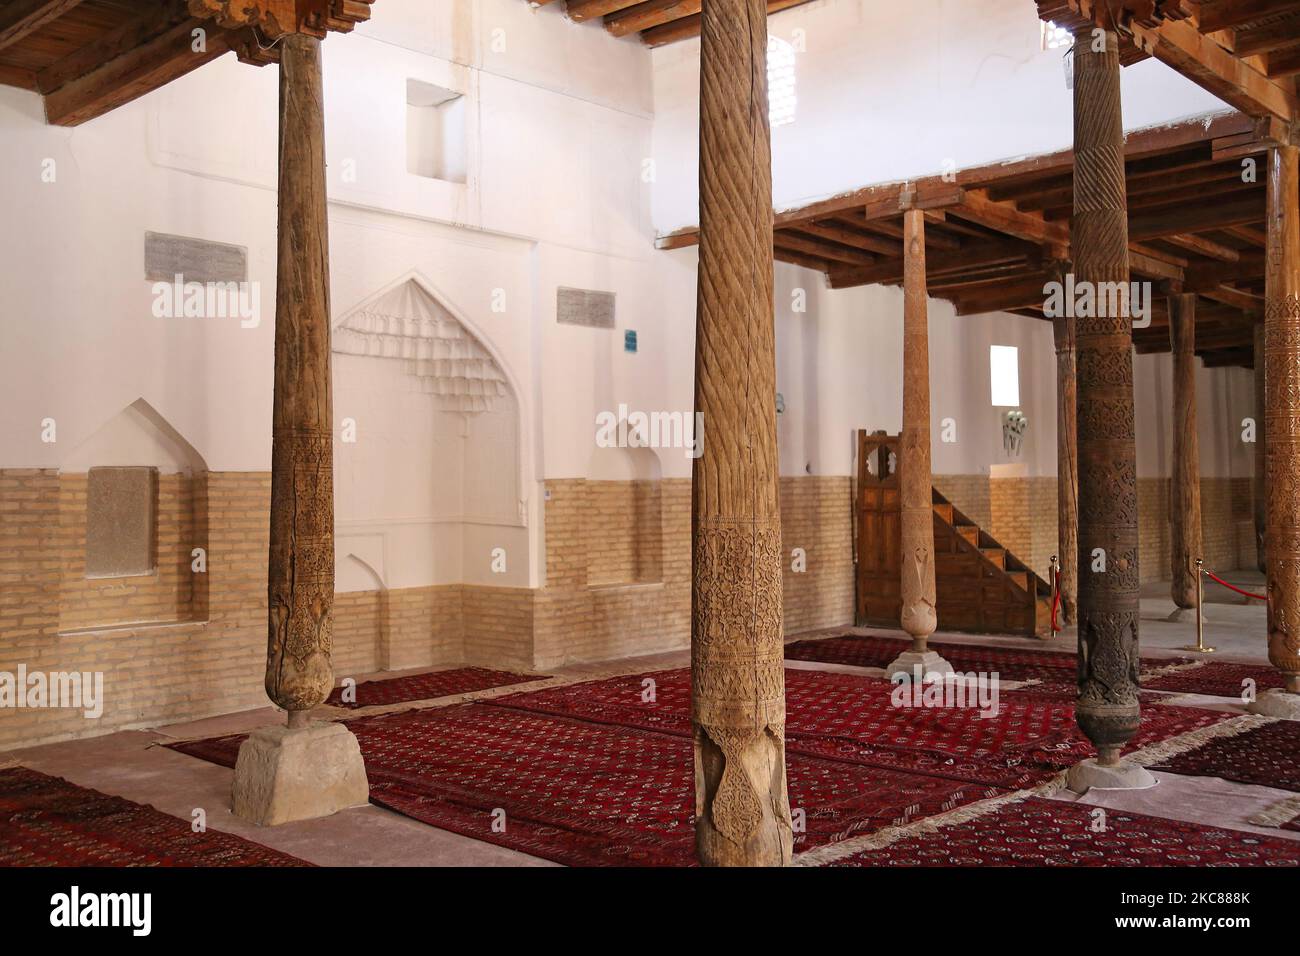 Juma (vendredi) Mosquée, rue Polvon Kori, Ichan Kala (forteresse intérieure), Khiva, province de Khorezm, Ouzbékistan, Asie centrale Banque D'Images